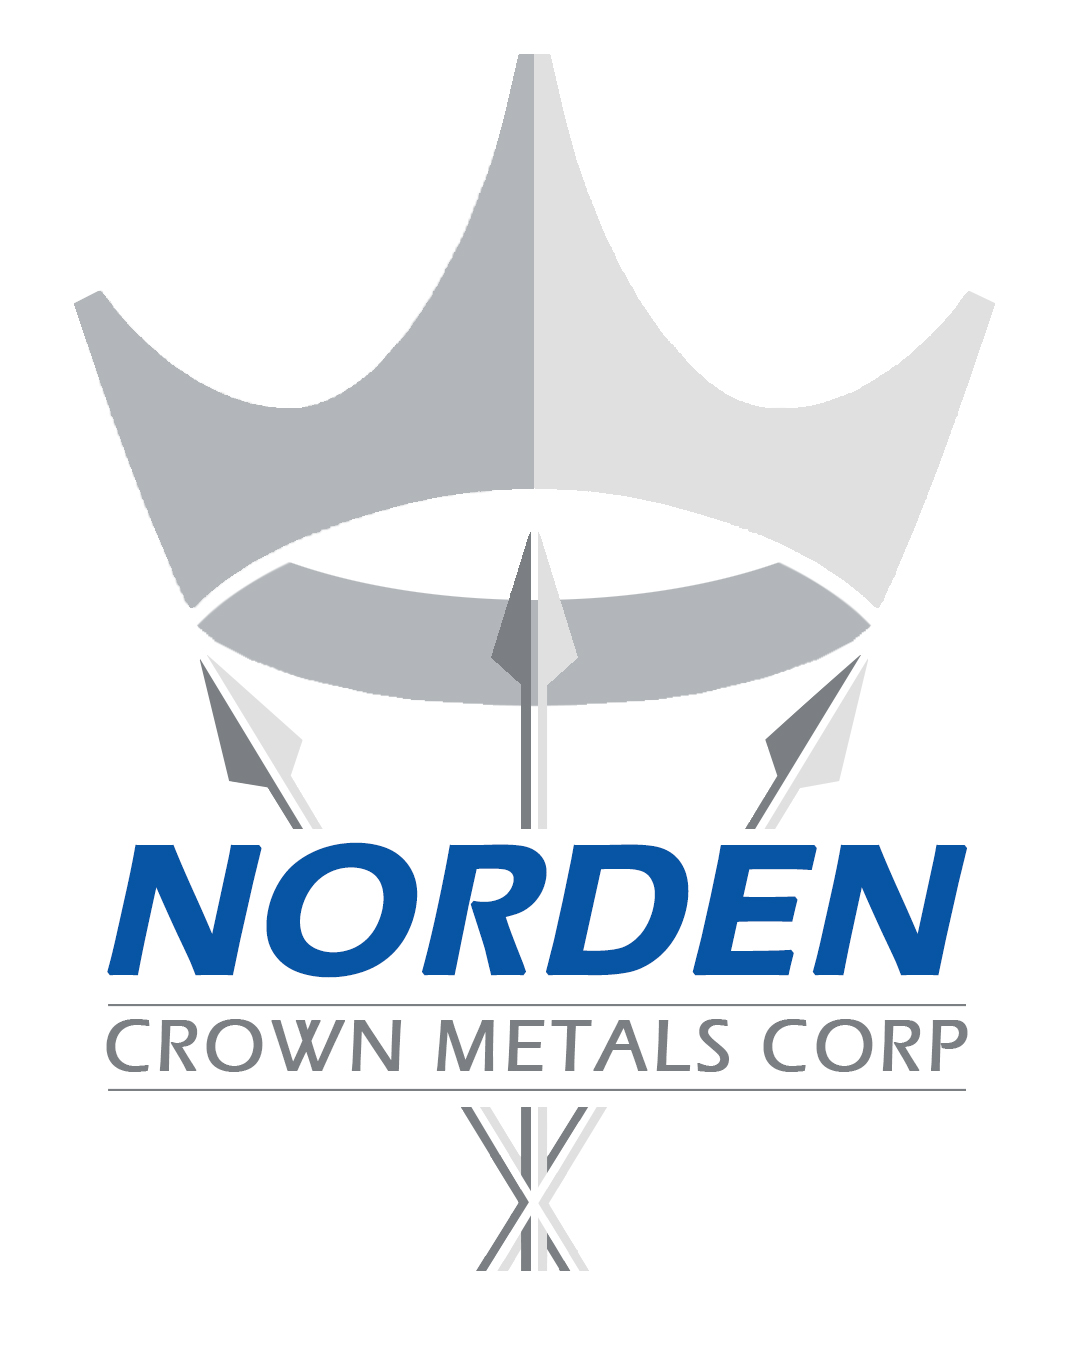 Norden Crown Metals Corp.